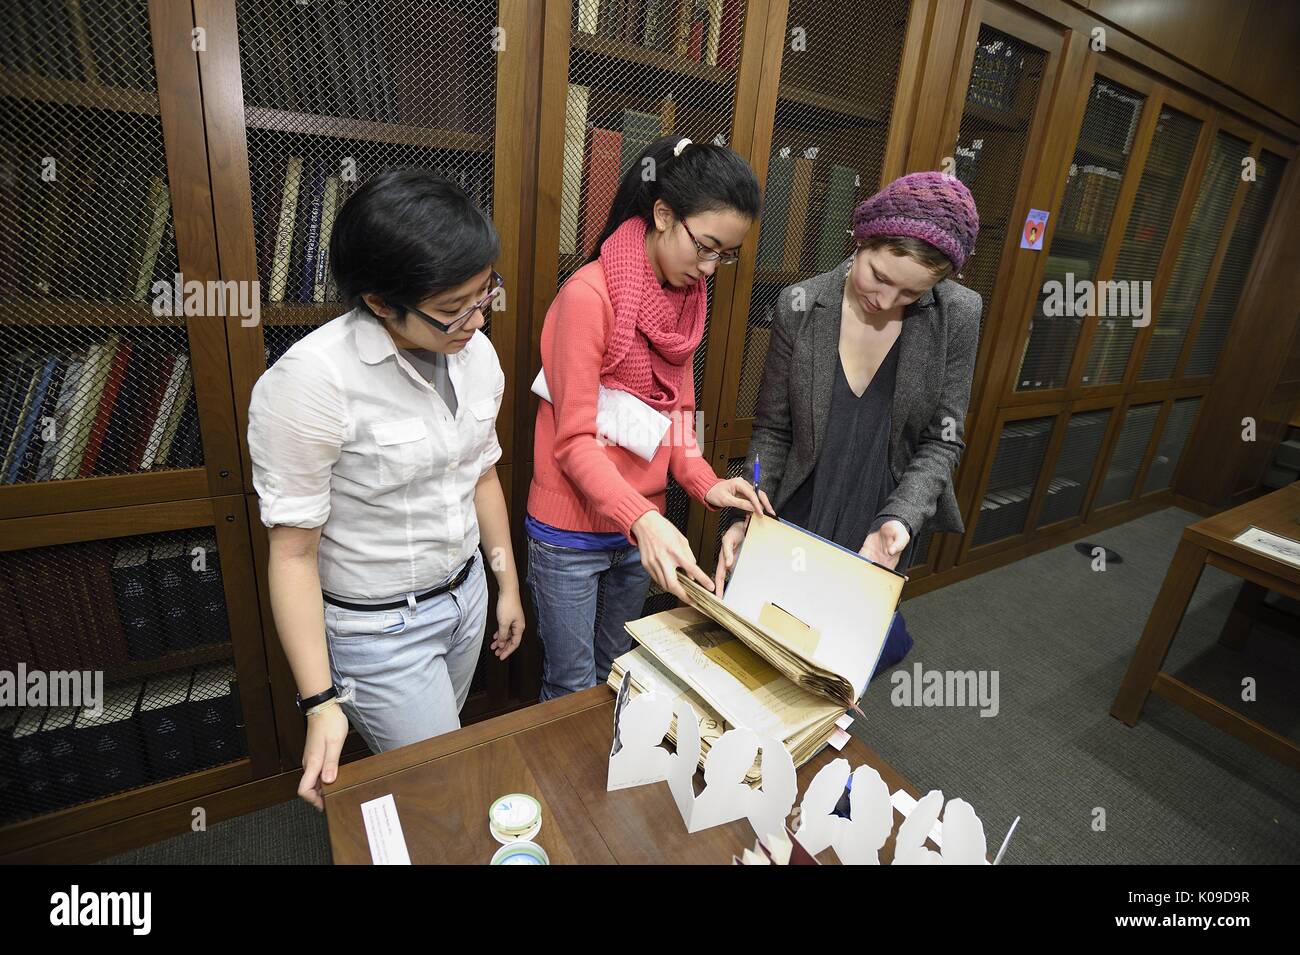 Drei weibliche Studenten sind zu Beginn durch eine Mappe in der Bibliothek Veranstaltung namens Schmutzige Bücher und Sehnsucht sieht zu schauen, 11. Februar 2016. Stockfoto